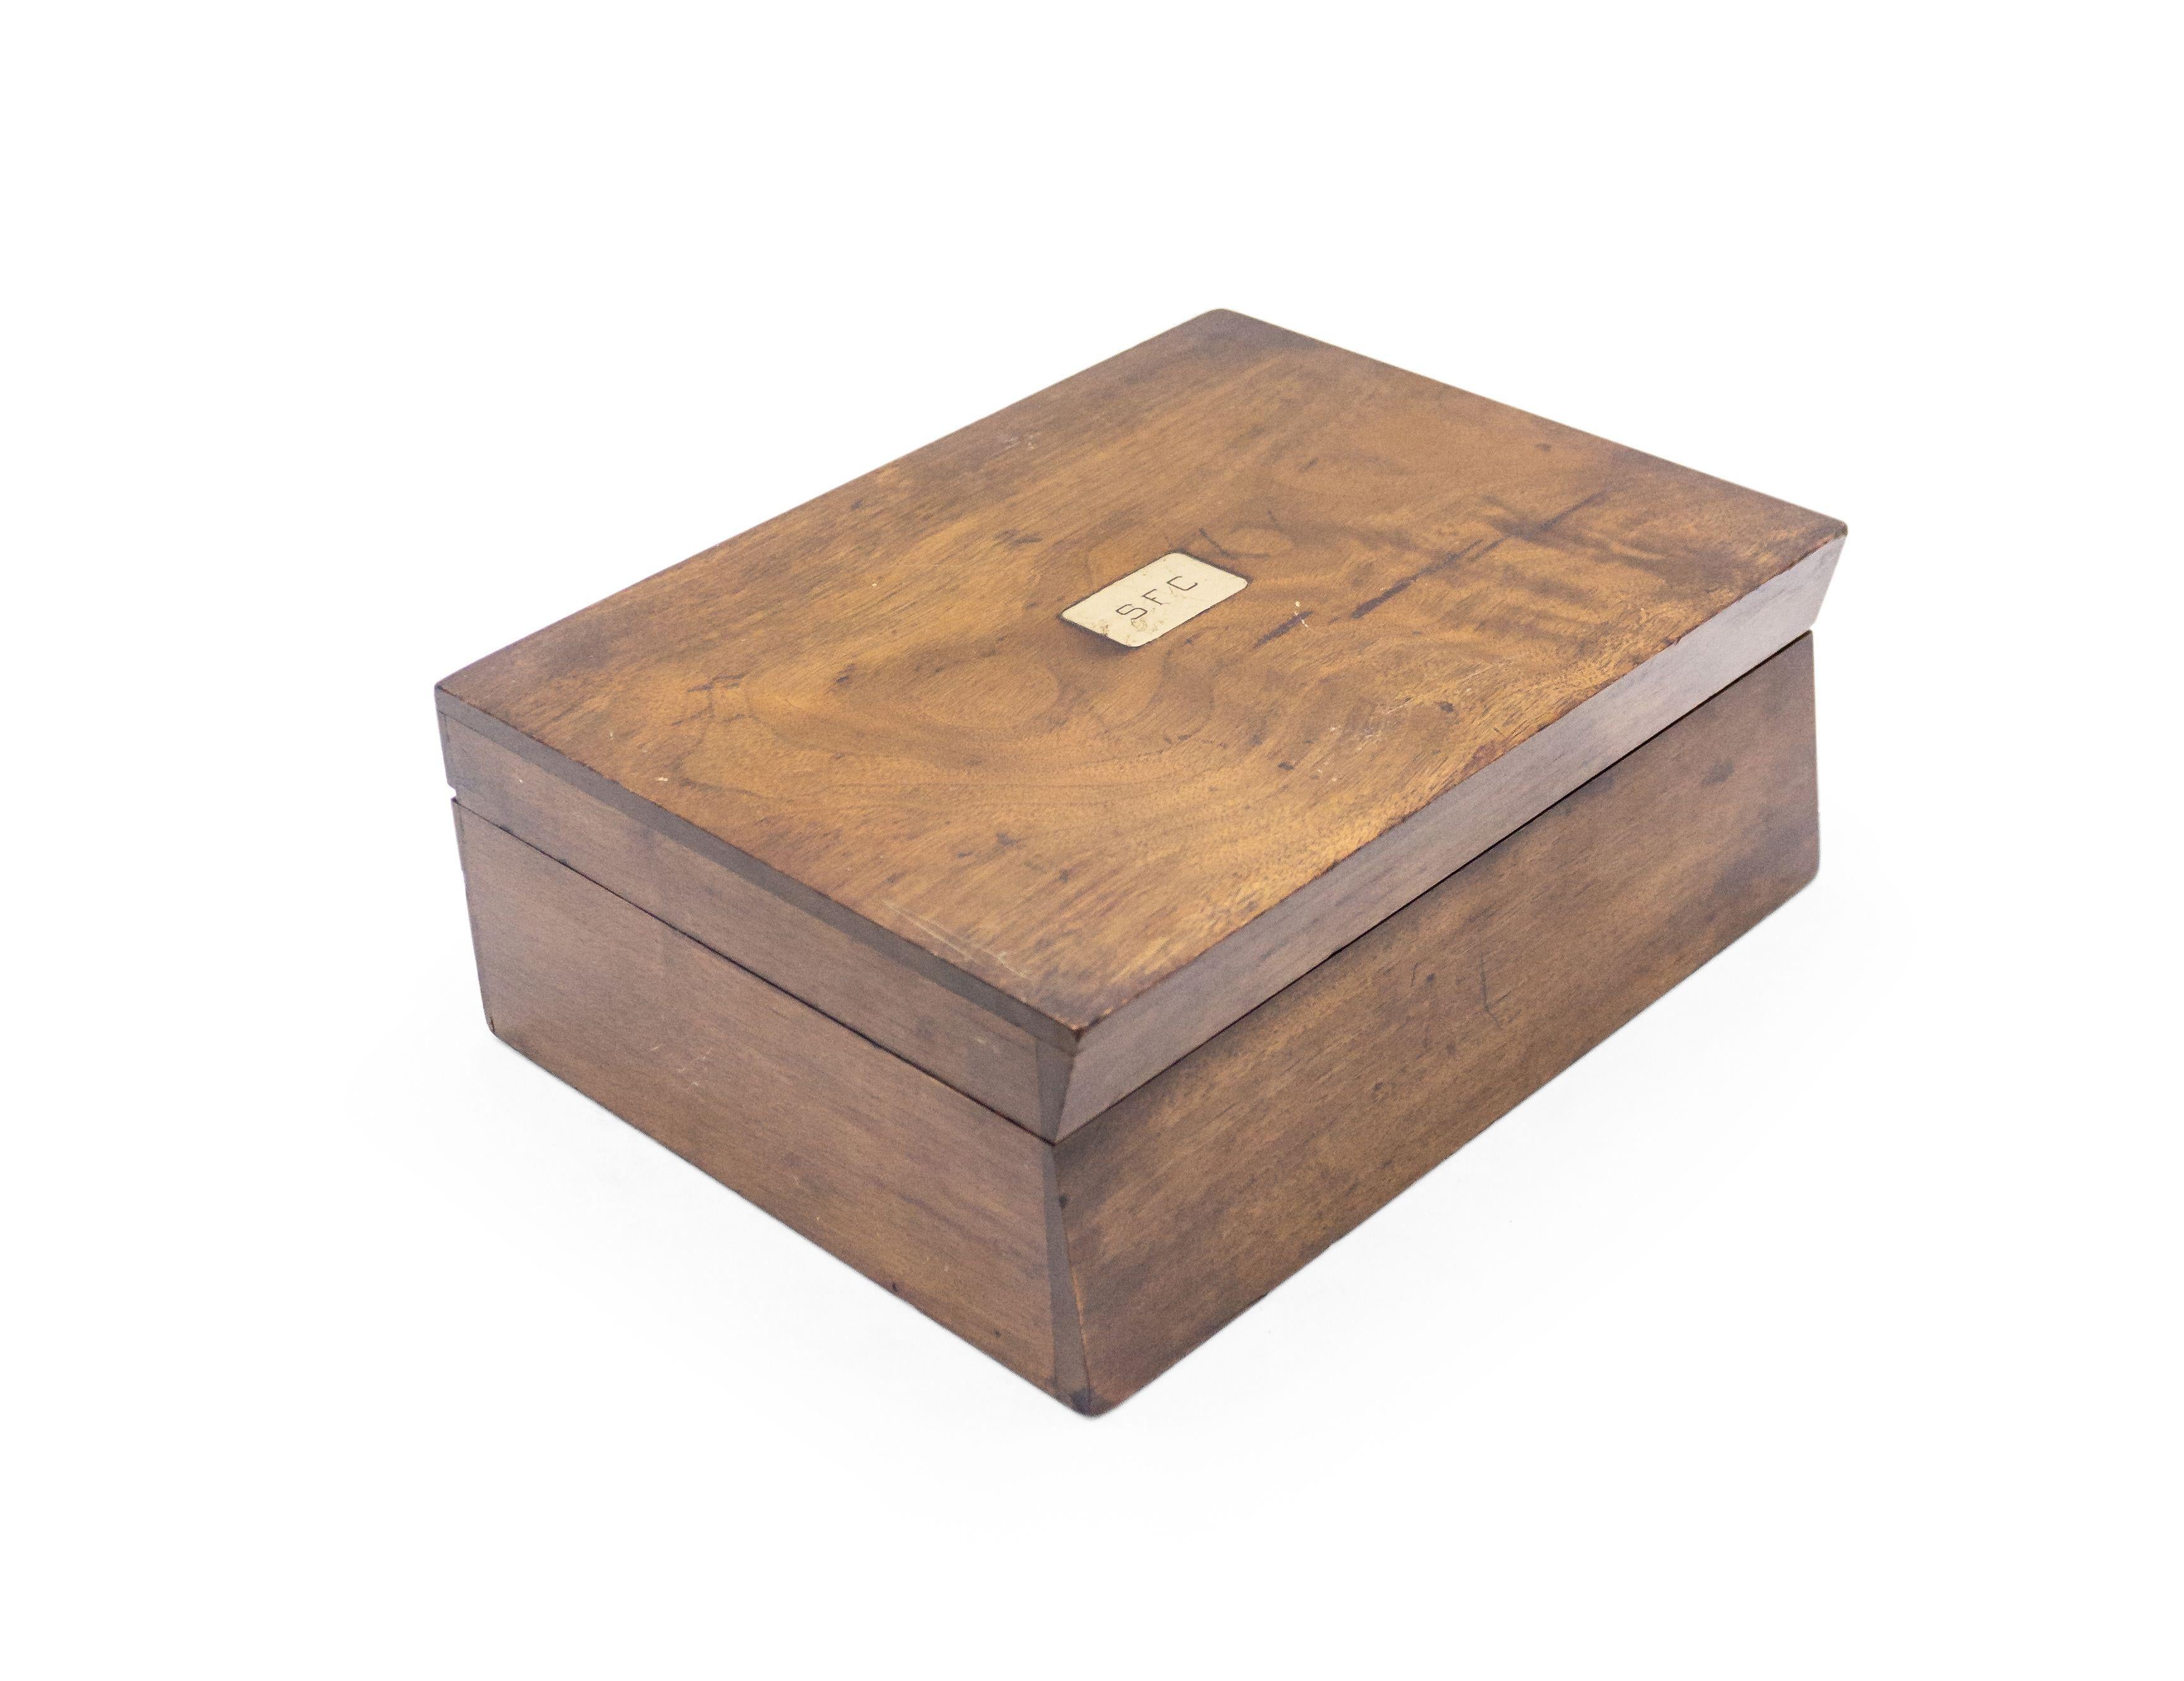 Boîte anglaise victorienne rectangulaire en bois de rose avec plaque rectangulaire en laiton incrustée sur le couvercle incliné avec les initiales S.F.C..
 